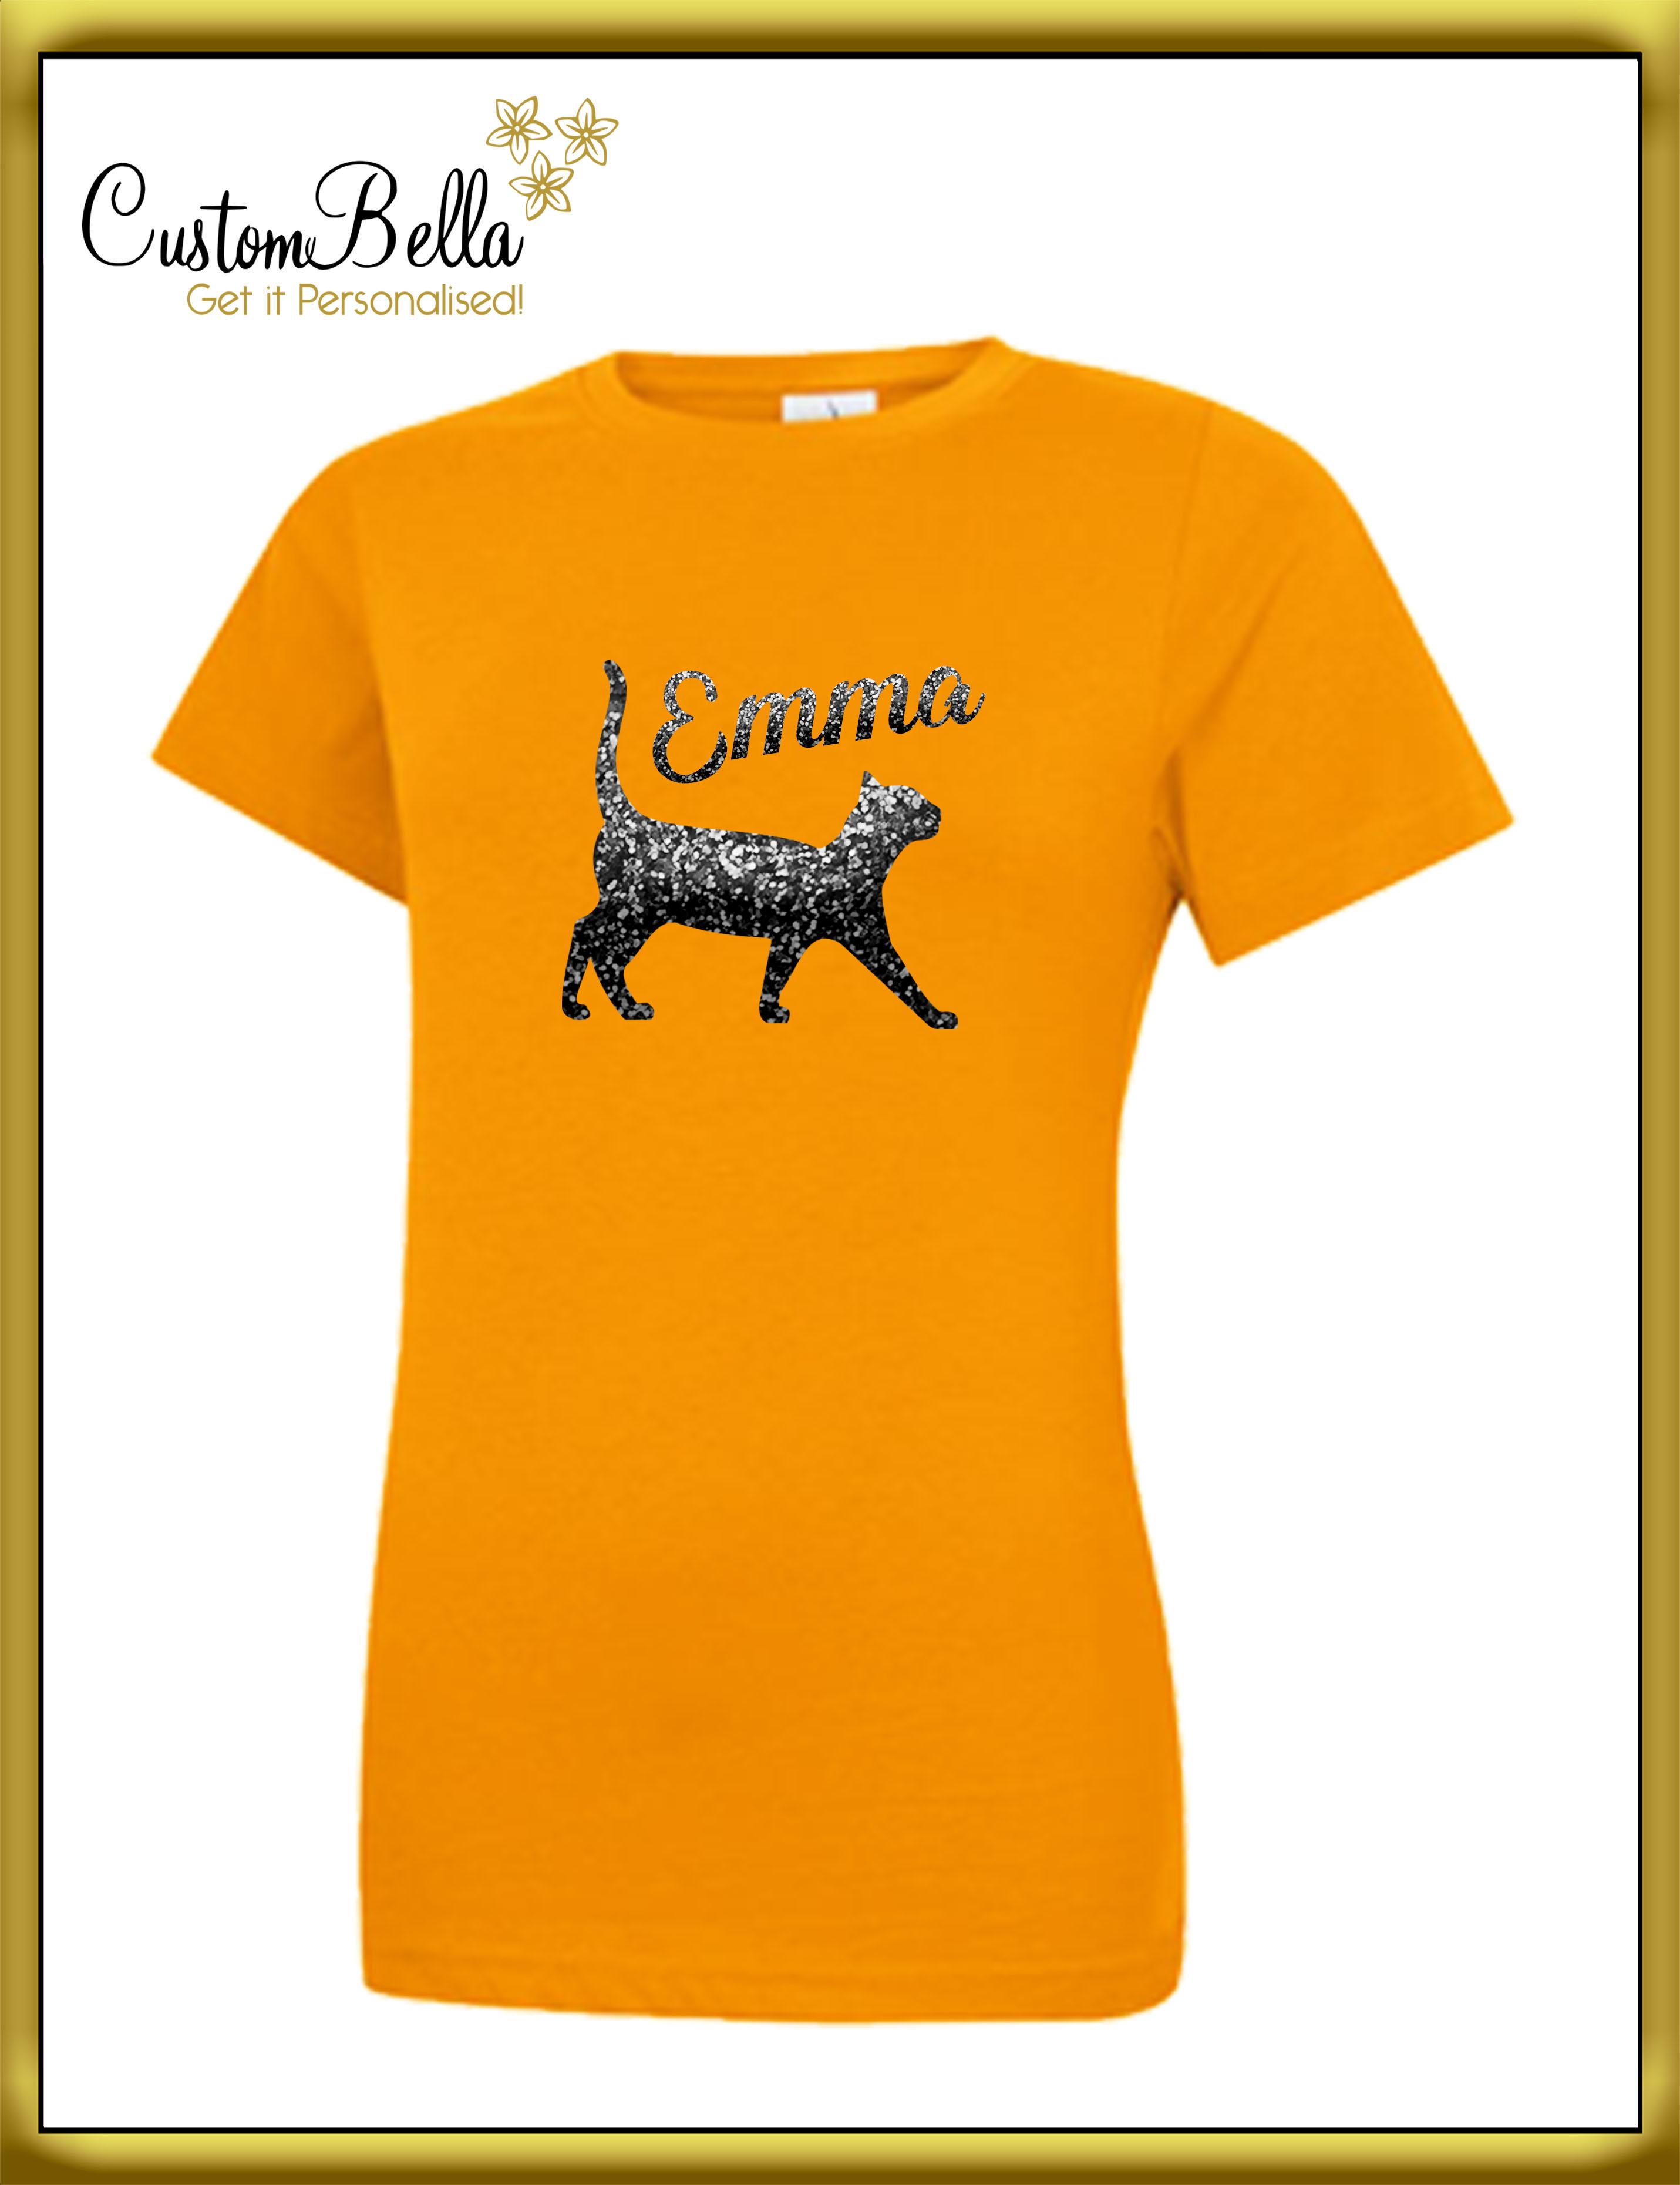 Glittter Printed women's T-shirt short sleeve orange